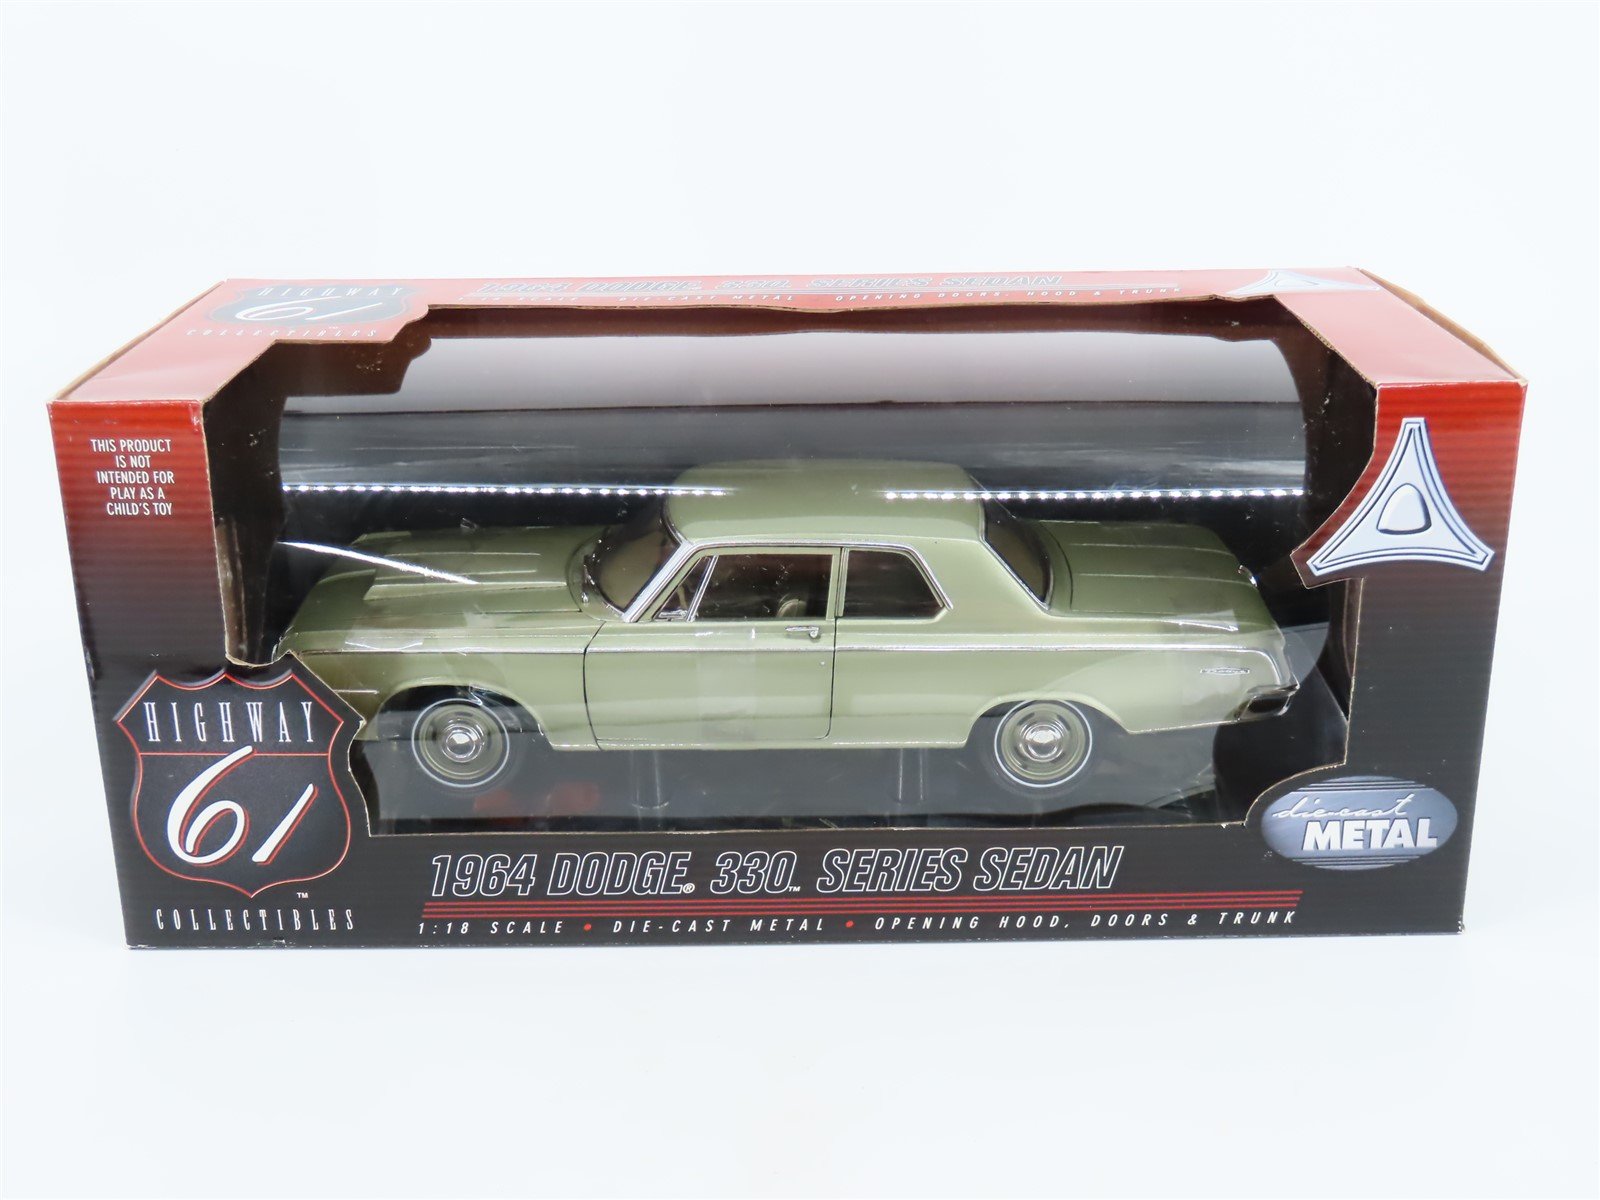 1:18 Scale Ertl Highway 61 #50048 Die-Cast 1964 Dodge 330 Series Sedan